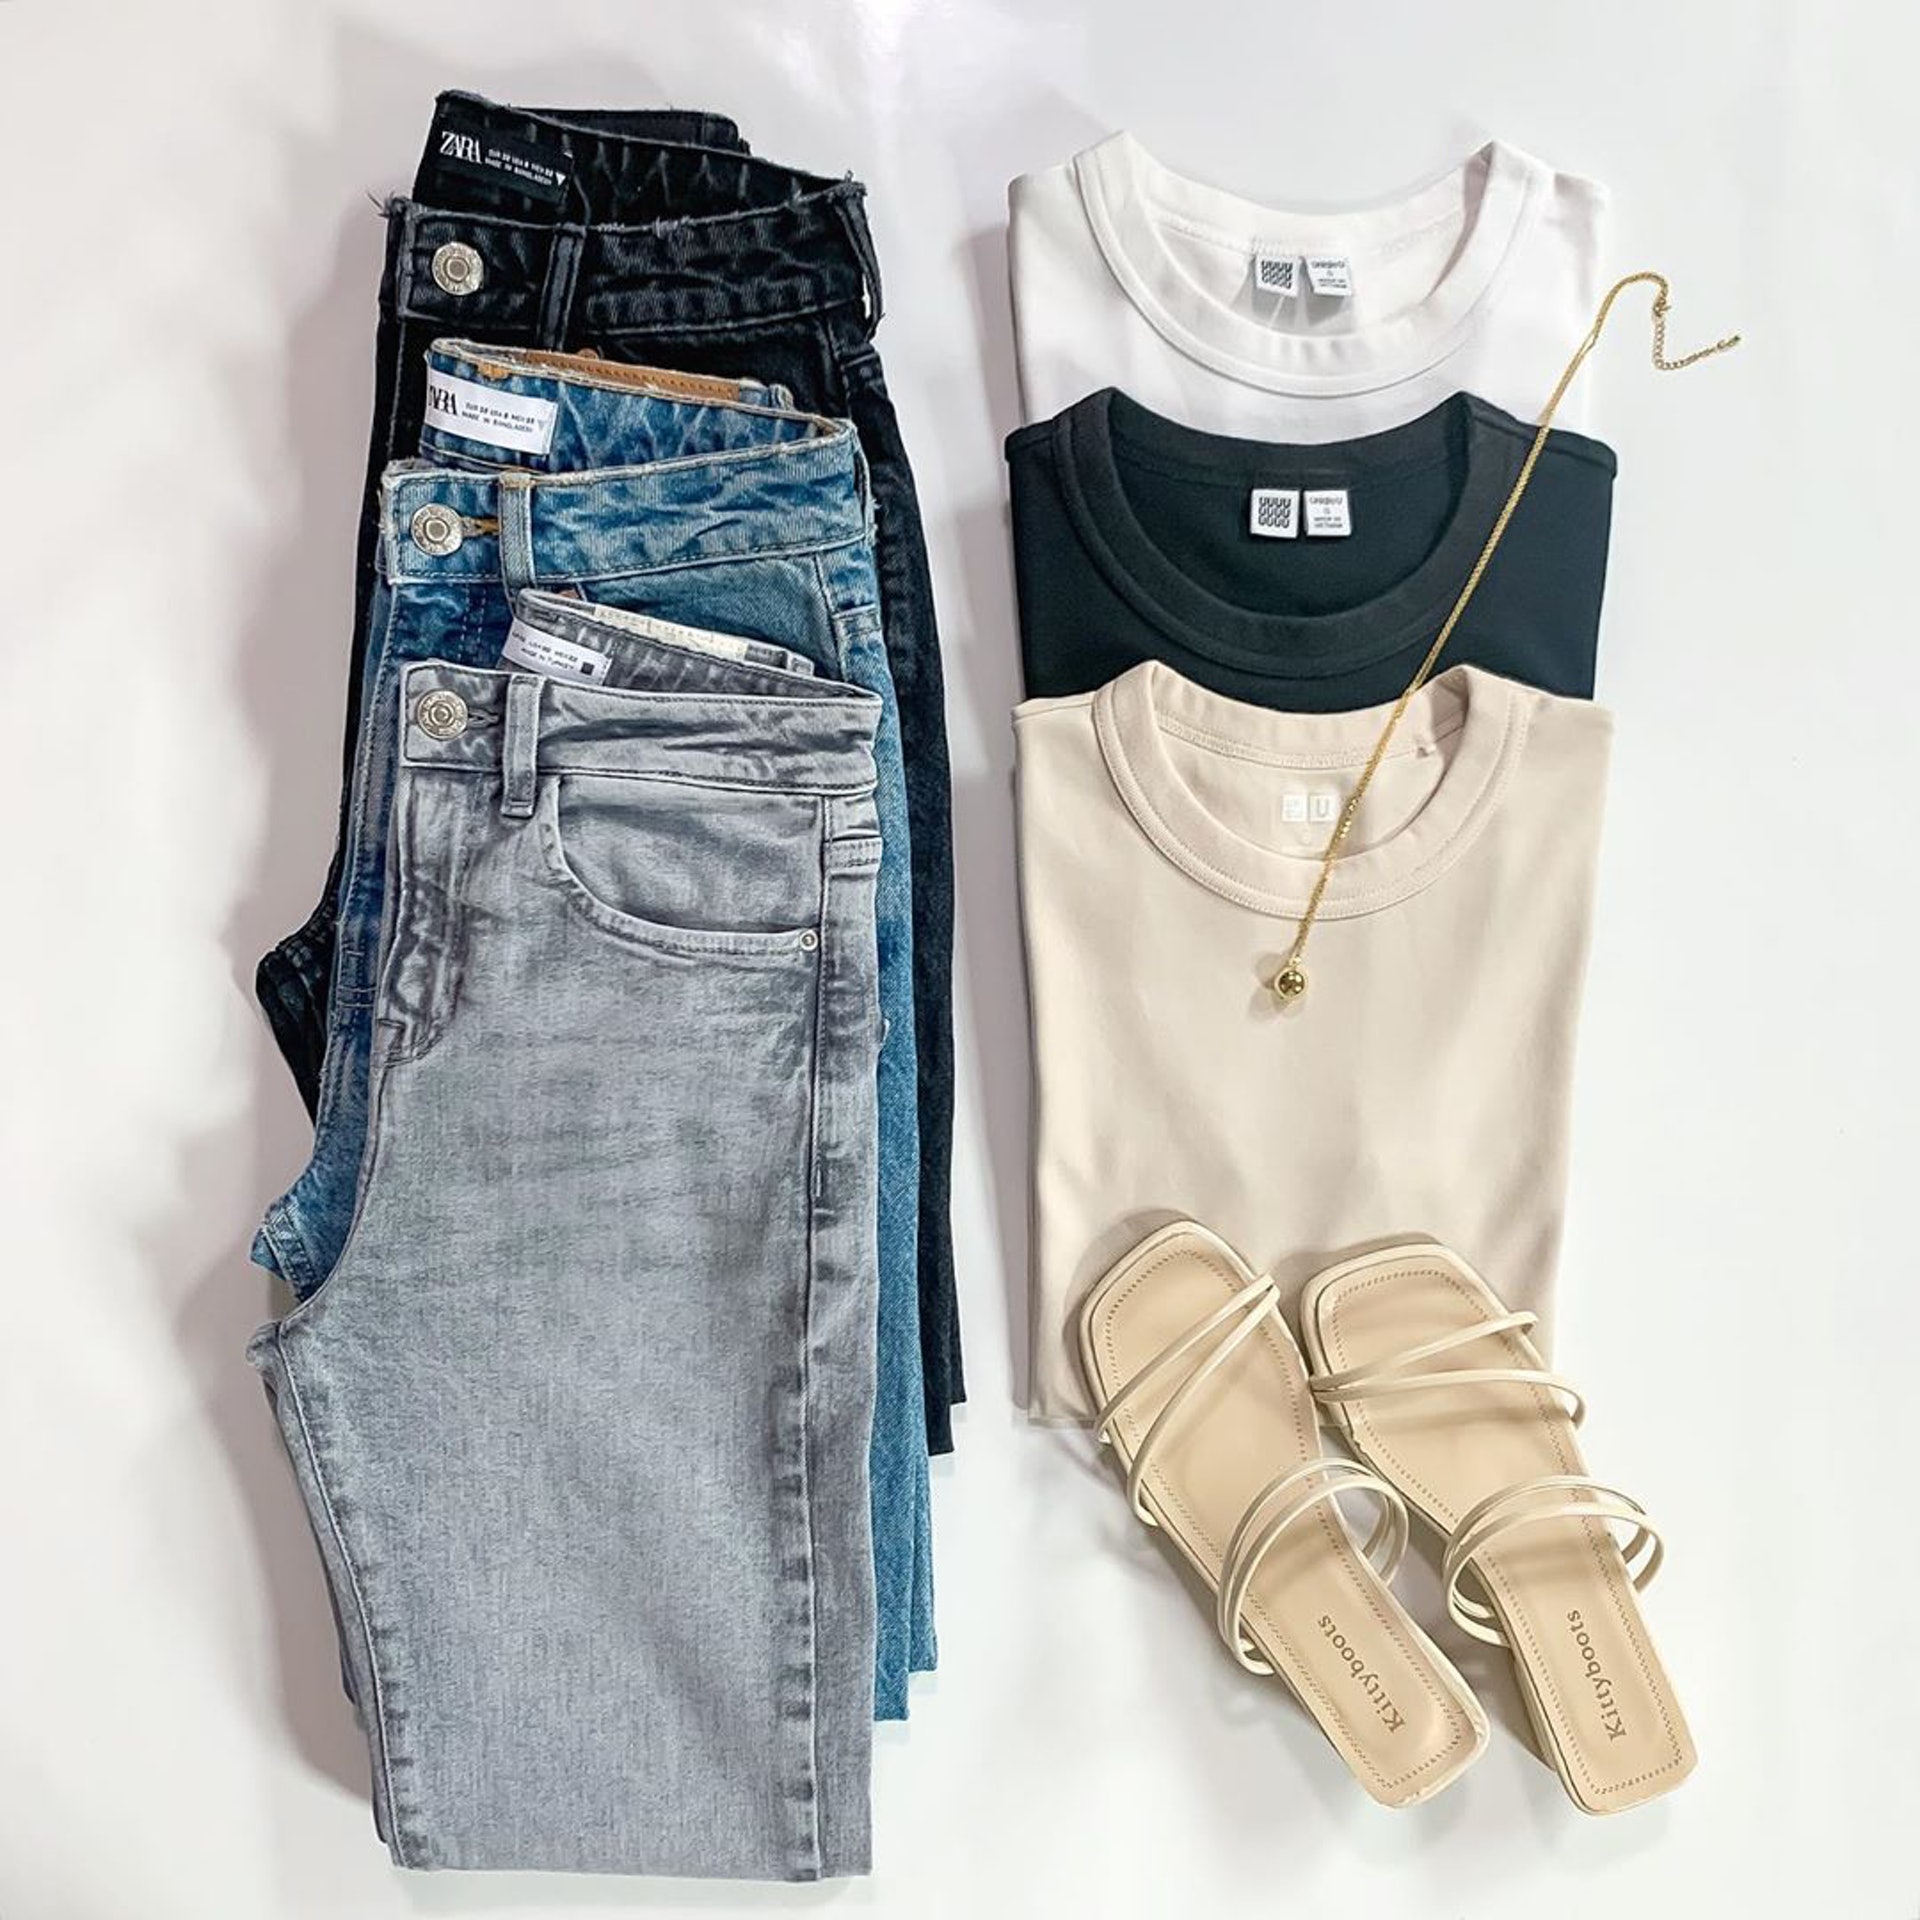 Zara牛仔褲與Uniqlo圓領T-Shirt也是__htm.i_喜愛的單品。(__htm.i_@Instagram)